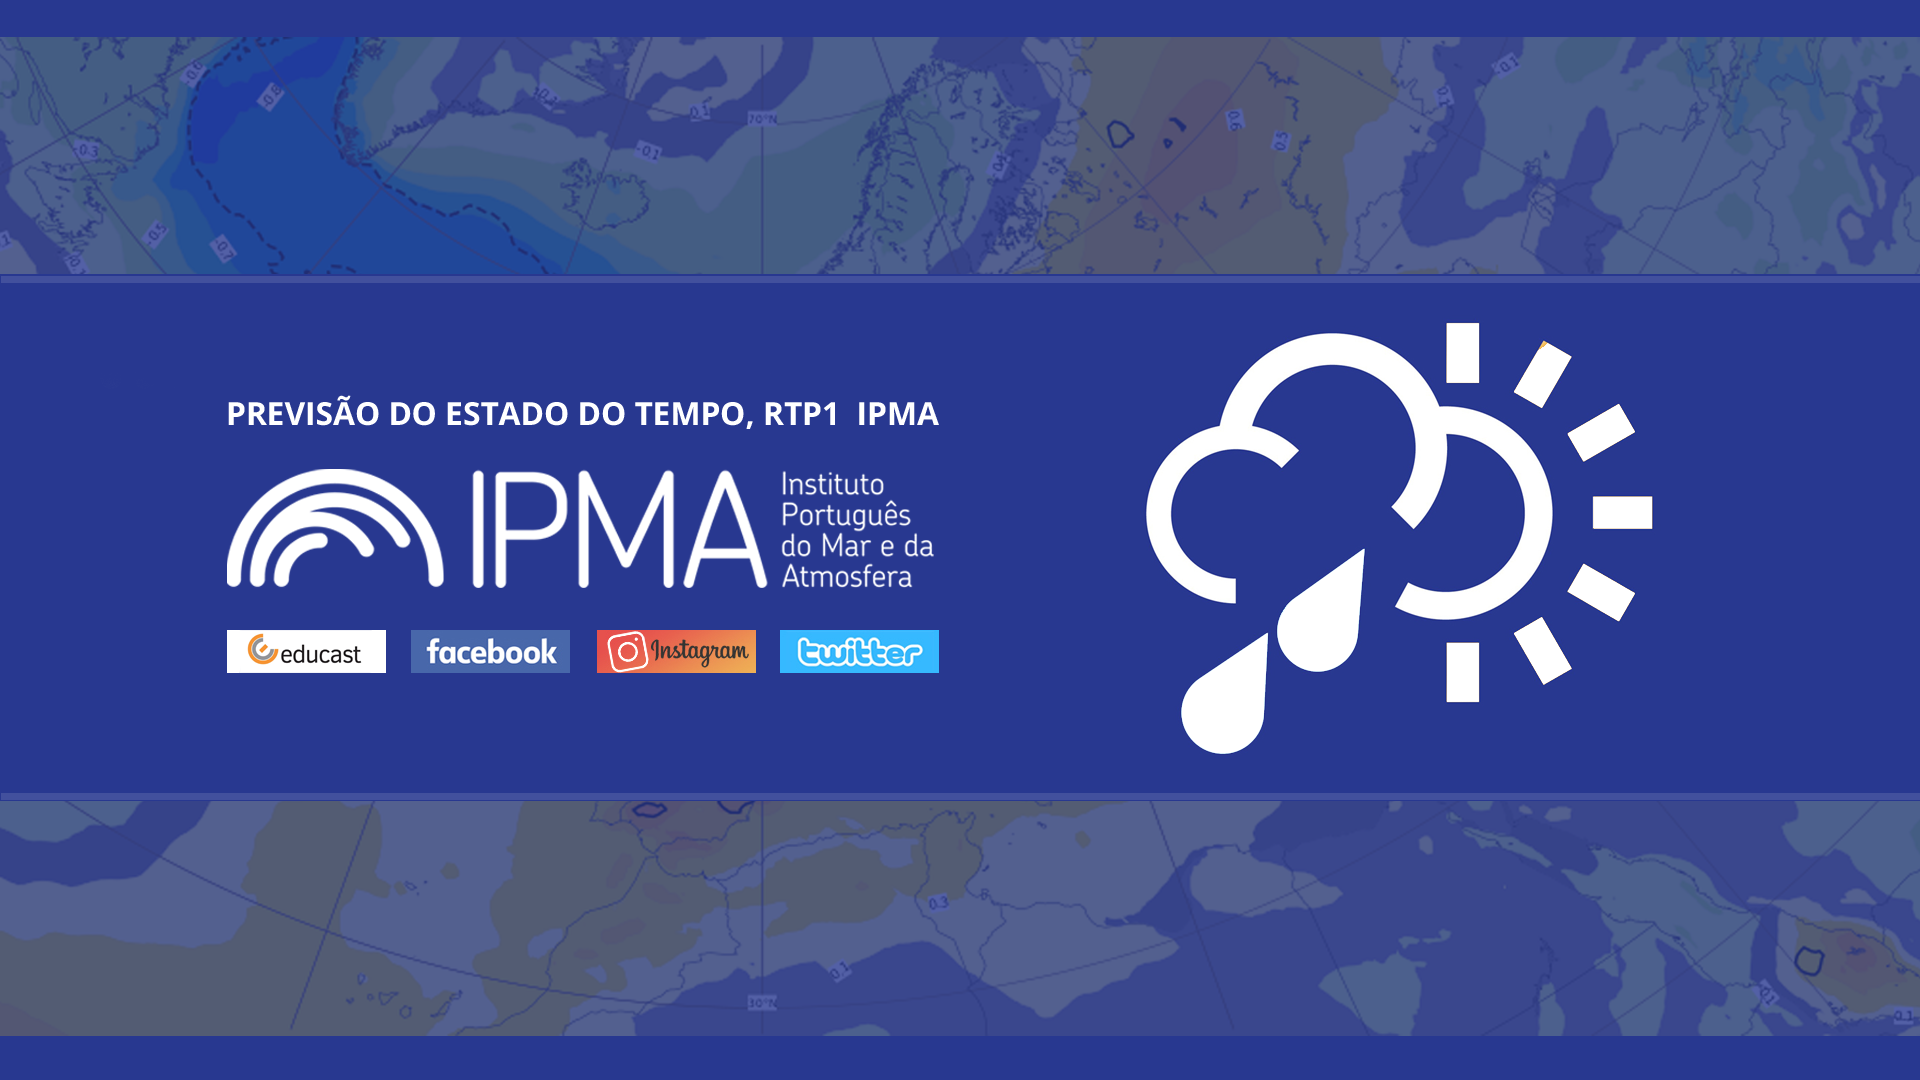  Previsão do estado do tempo, RTP1, 15-02-2022, IPMA.